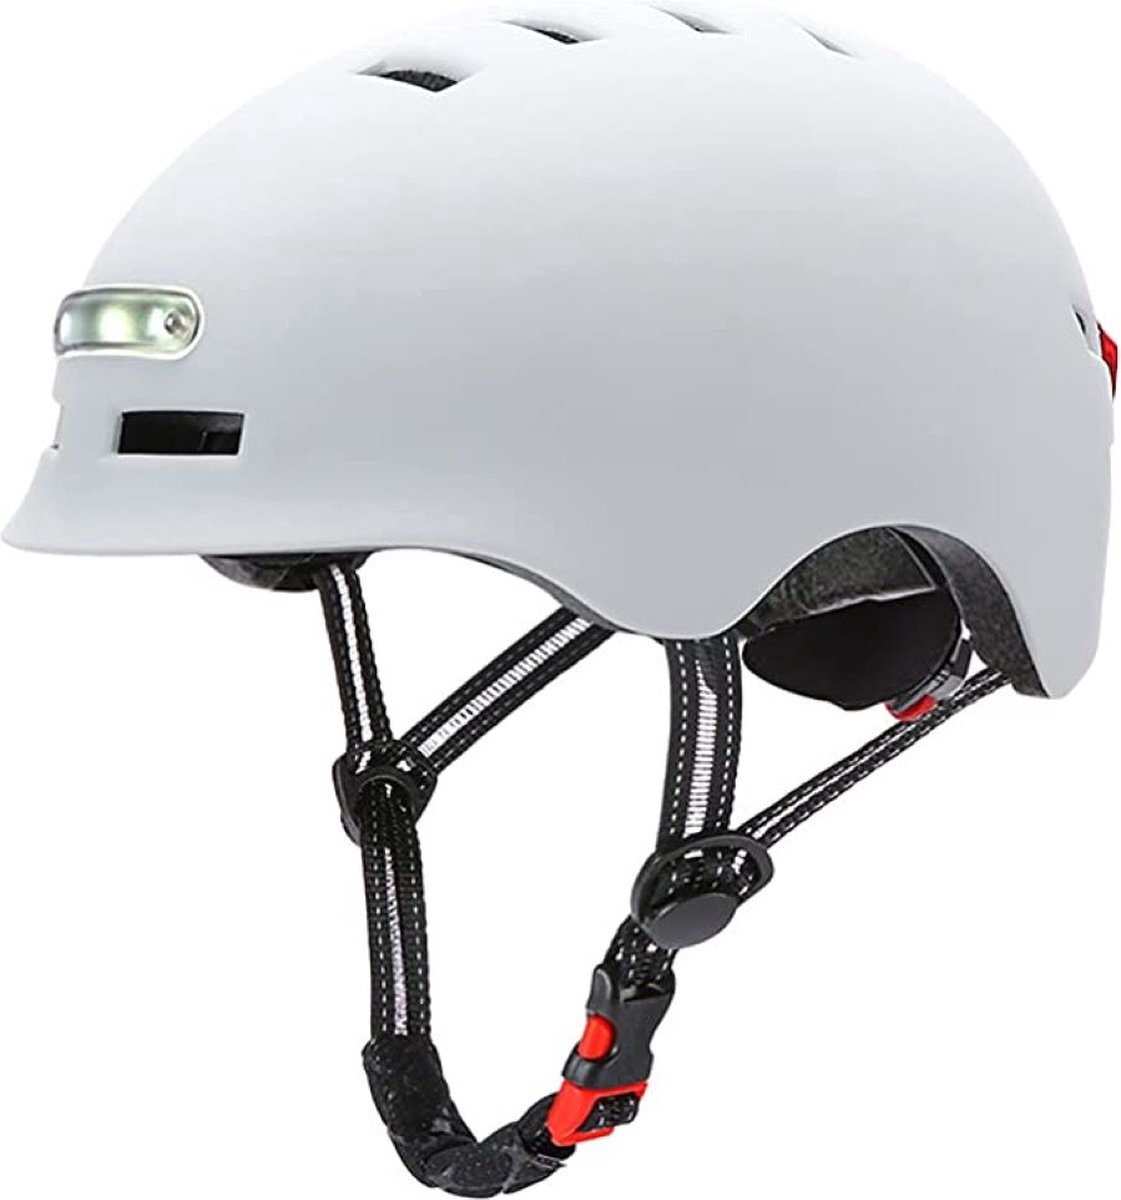 Fietshelm met voor- en achterlicht|LED licht |SMART helm| fiets, step| Maat L